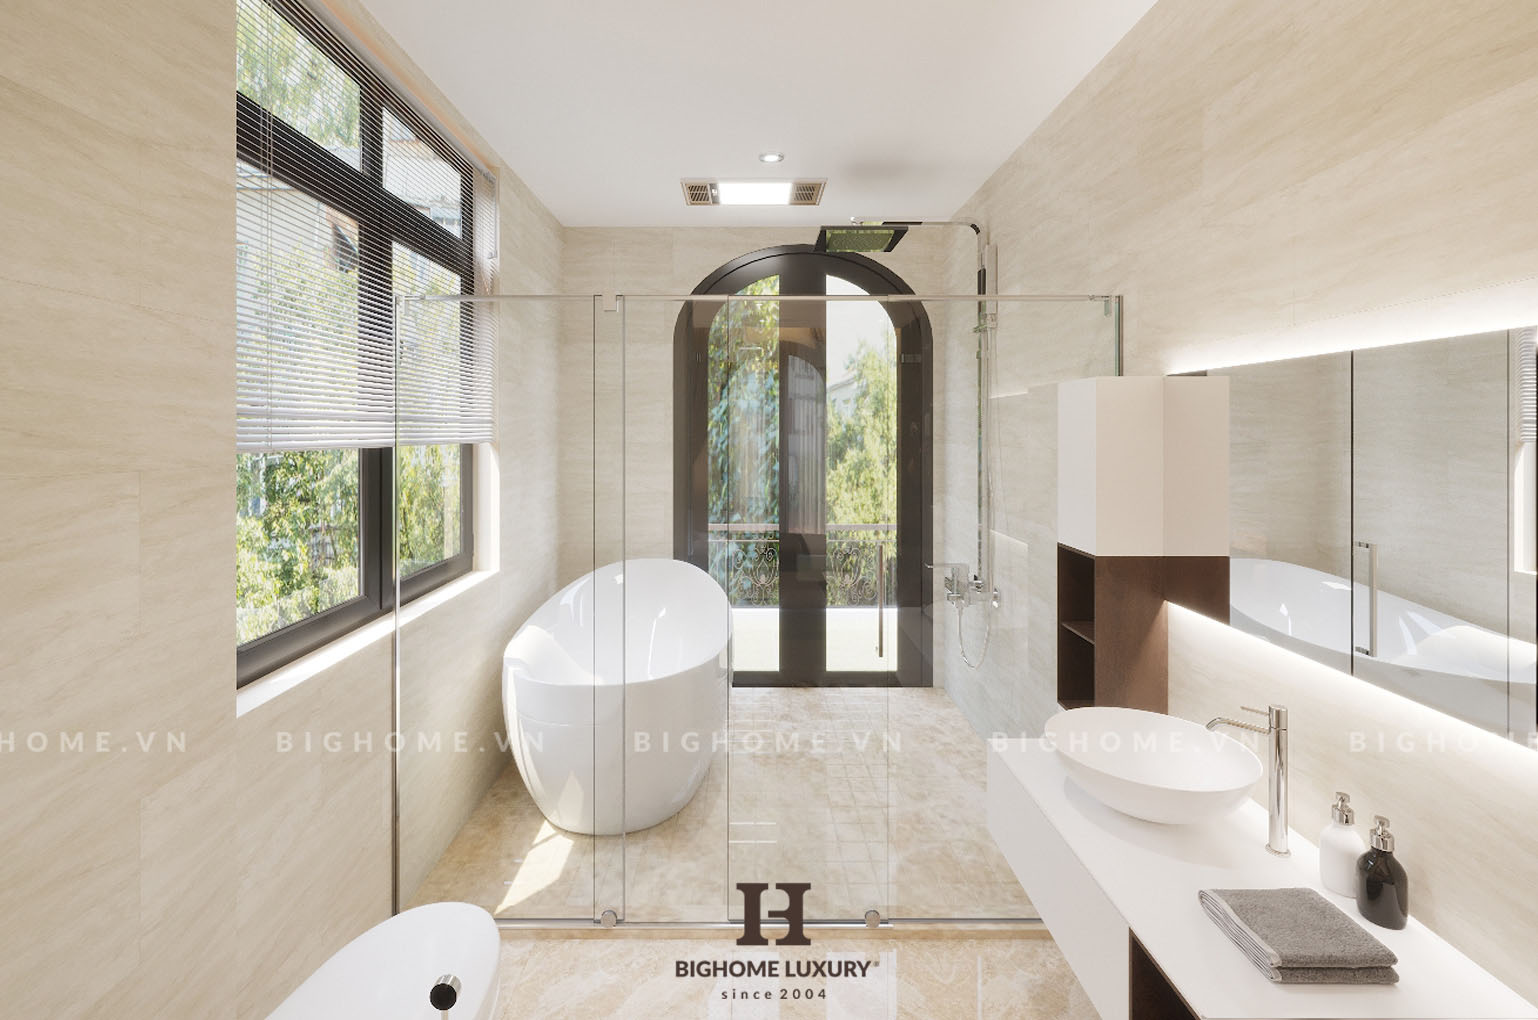 Thiết kế nội thất phòng tắm biệt thự Vinhomes Ocean đẳng cấp sử dụng chất liệu sứ cao cấp nhập khẩu kết hợp bệt điện tử thông minh nhập khẩu